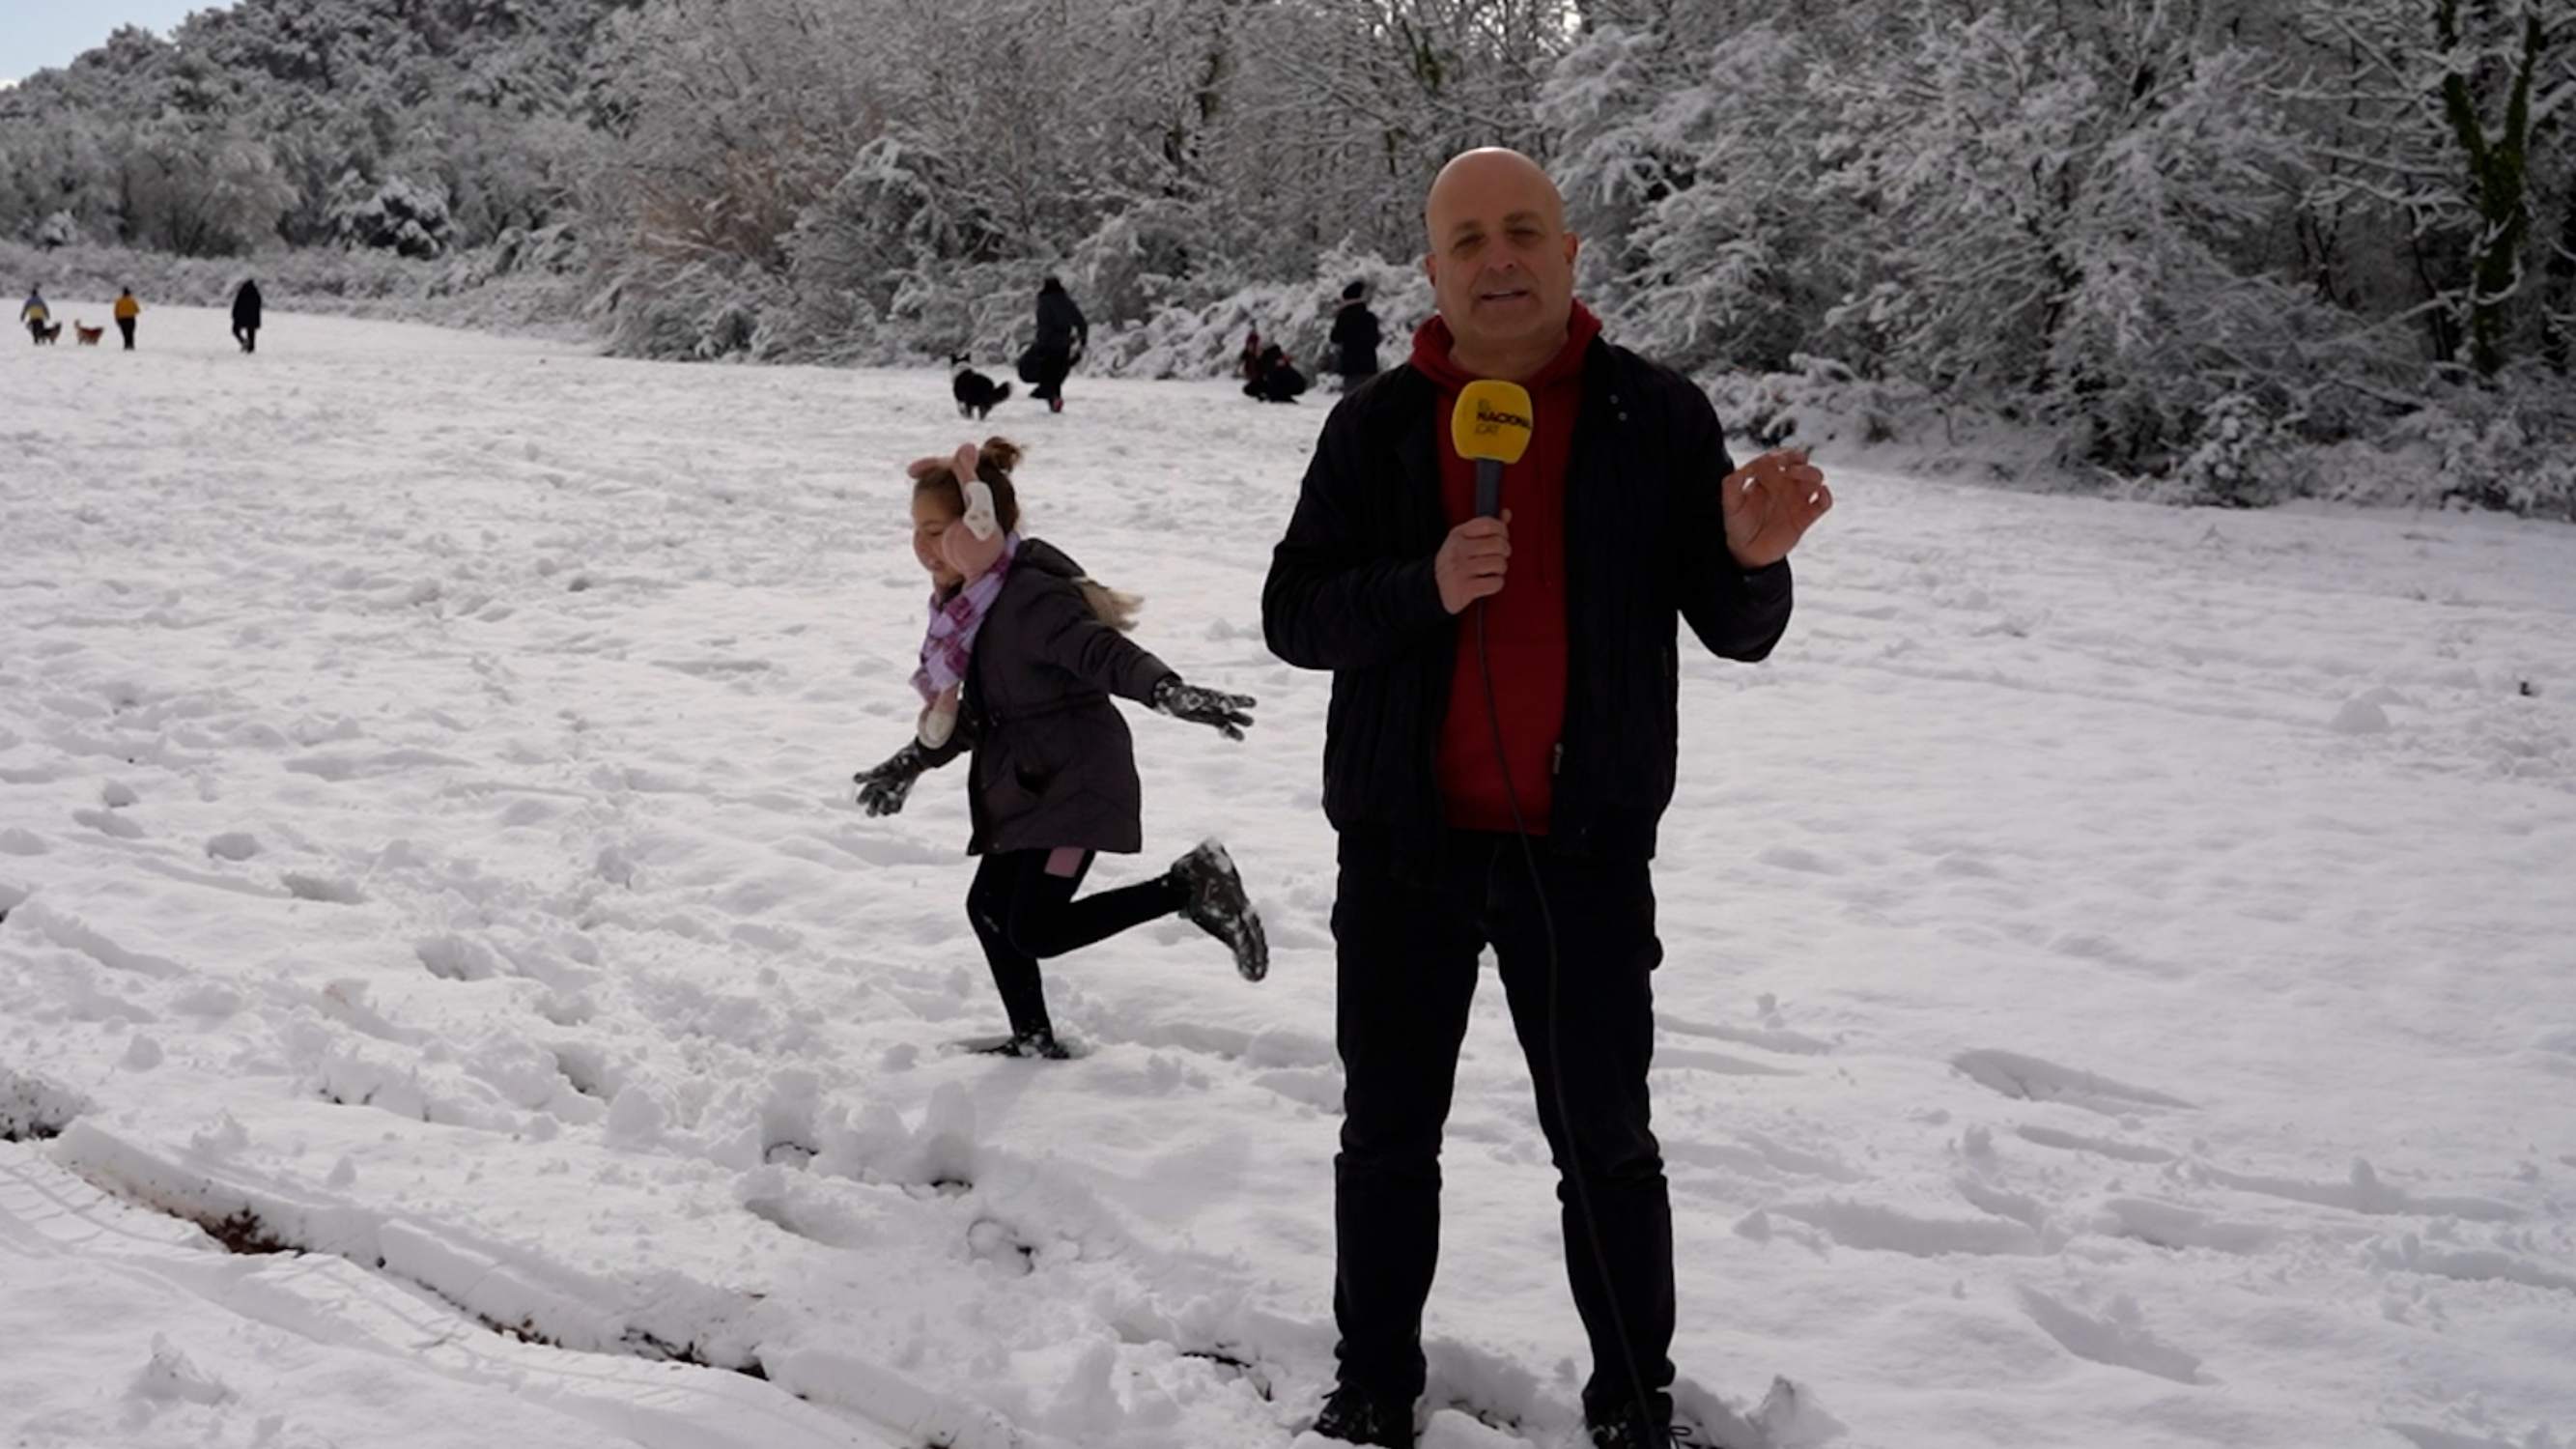 Guerra de bolas de nieve contra Xavi Freixes: los alumnos hacen novillos por la nevada